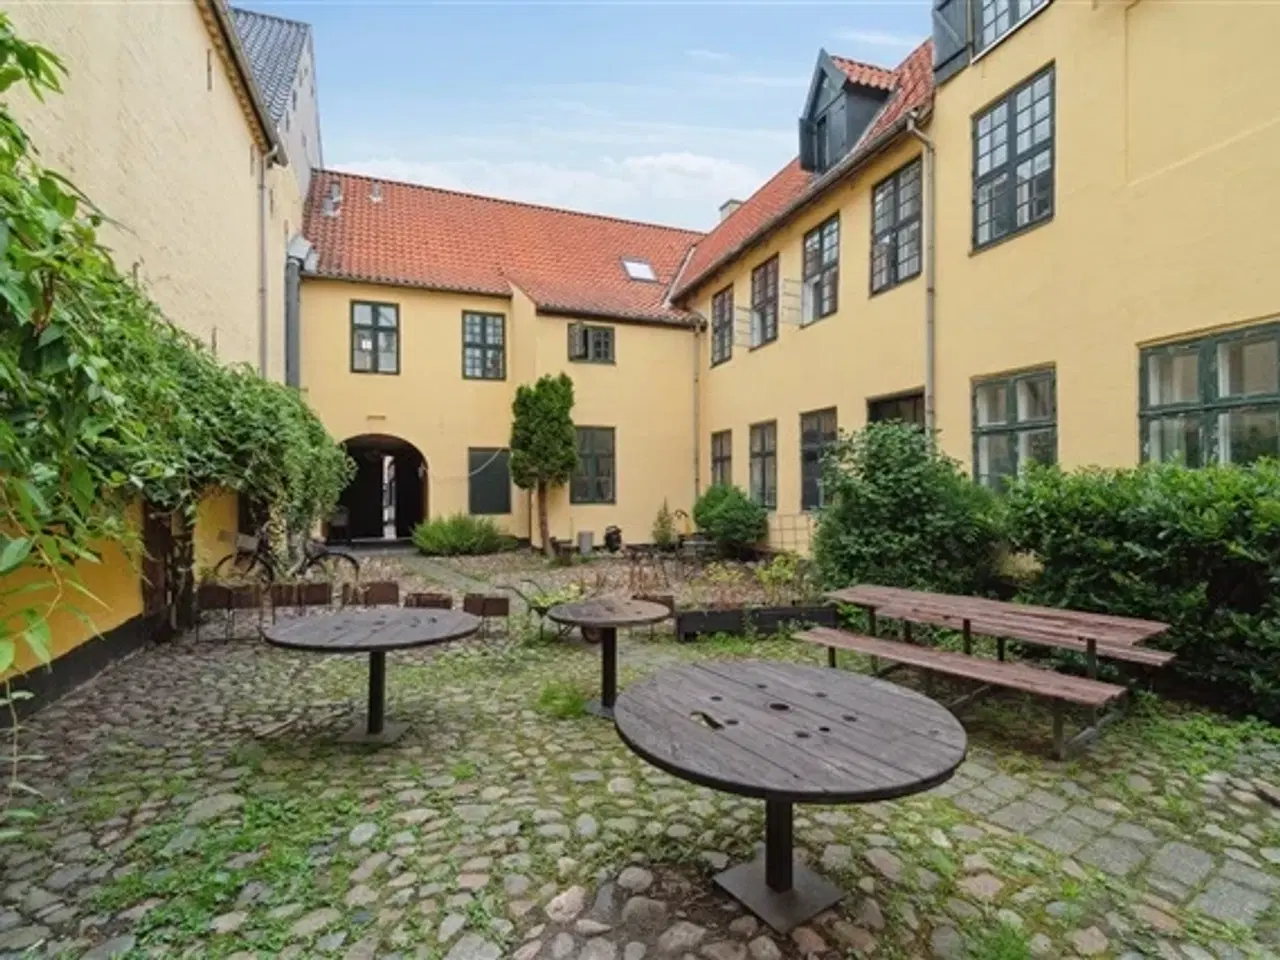 Billede 1 - 3 værelser for 12.500 kr. pr. måned, Helsingør, Frederiksborg